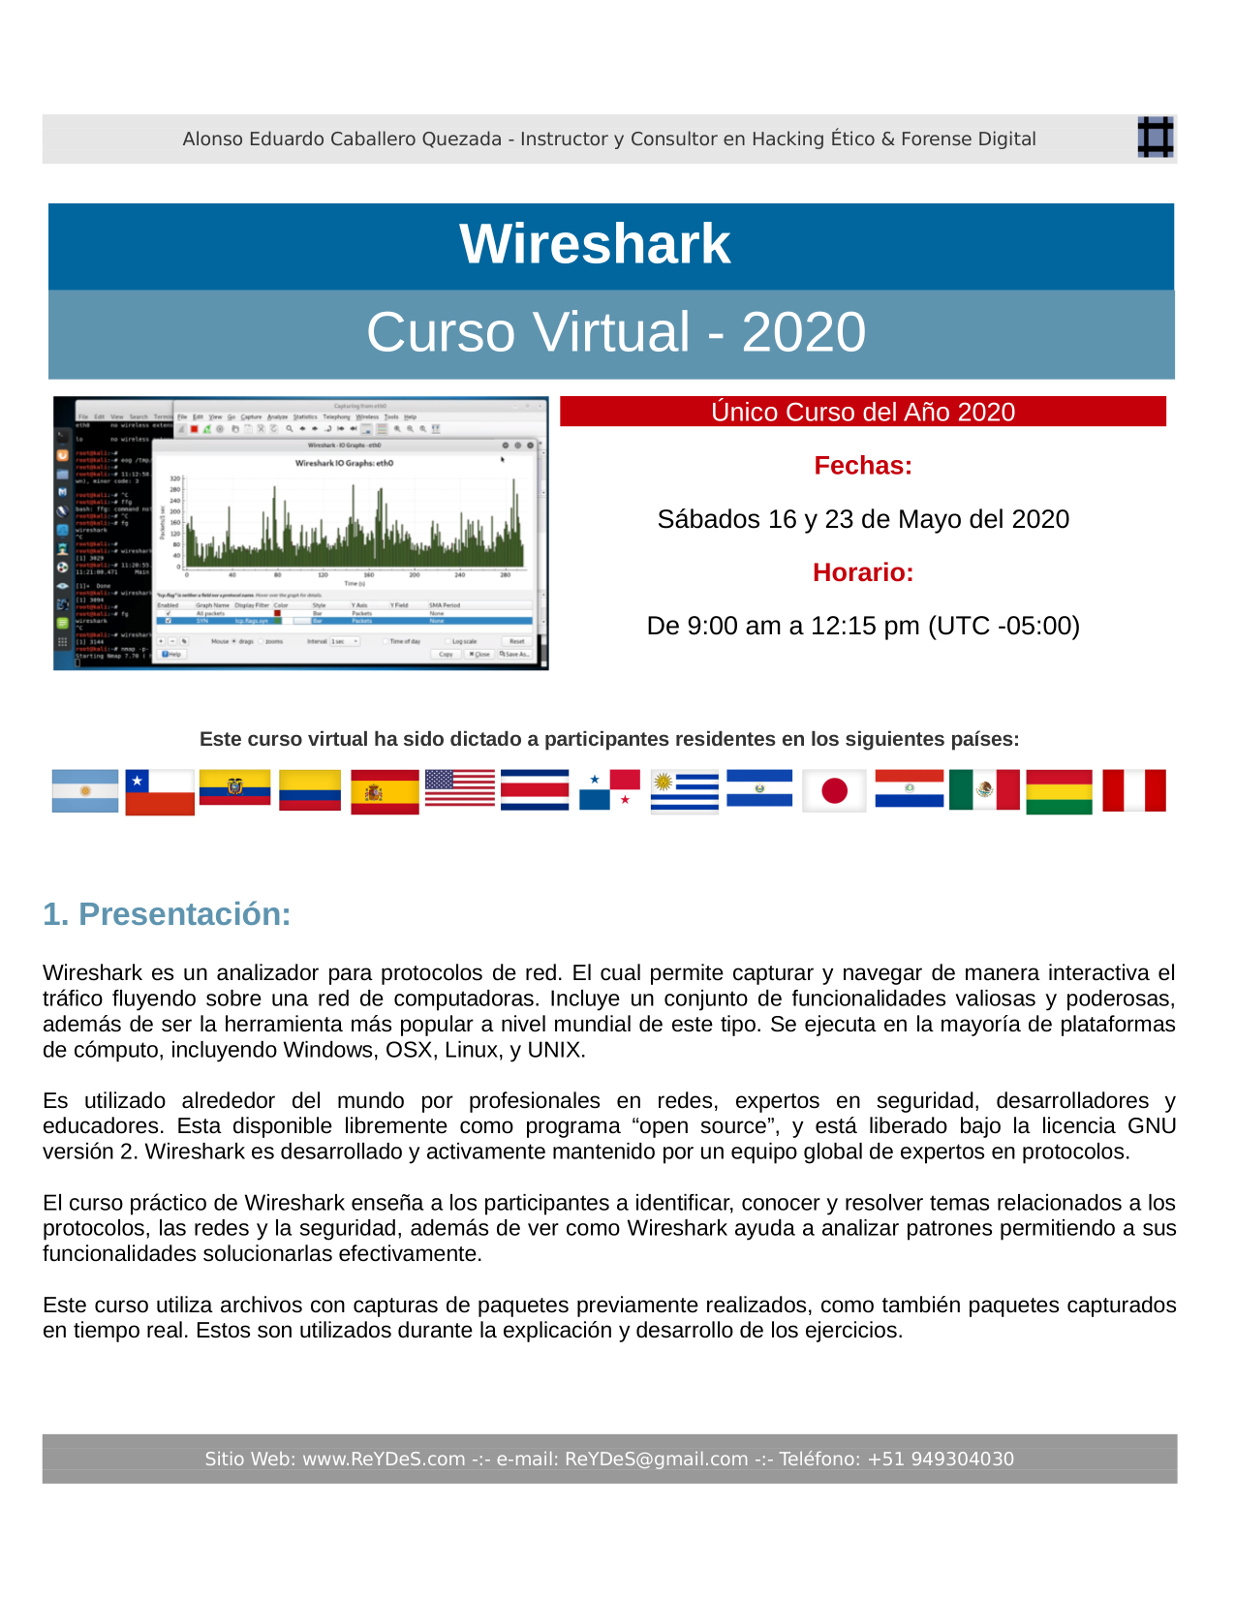 Único Curso Virtual de Wireshark 2020